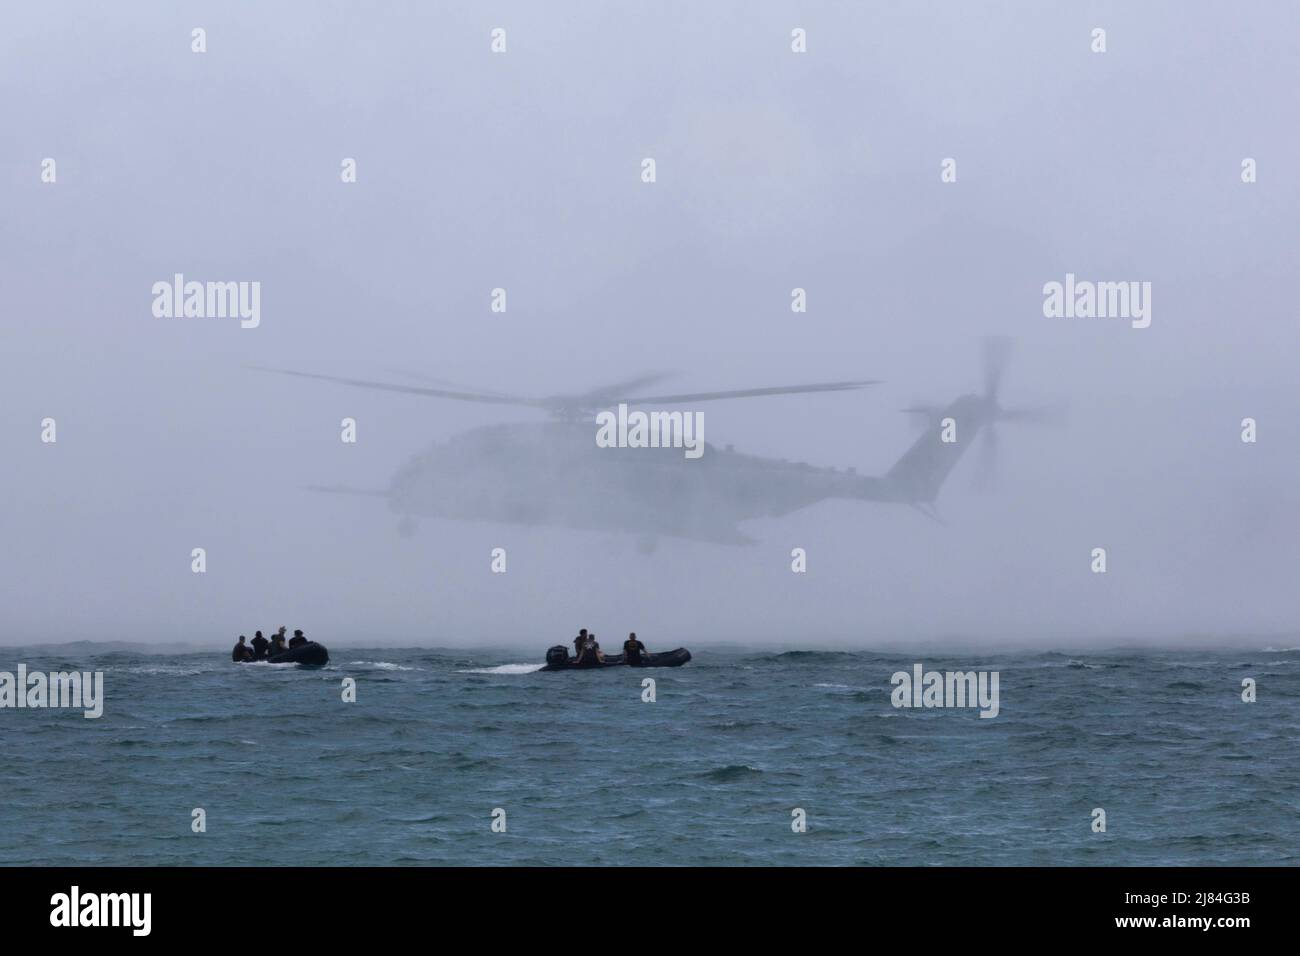 Apr 26, 2022 - Camp Hansen, Okinawa, Japan - US-Marines mit dem Bataillon Landing Team 1/5, 31. Marine Expeditionary Unit (MEU), Manöver auf Gummi-Raiding-Kampfflugzeuge (CRRC) während einer Helocast-Übung in Kin Blue, Okinawa, Japan, 27. April 2022. Helokasting ist eine Helikopter-Einführungstechnik zum Positionieren und Schweben über Wasser für Marines, aus dem sie springen können. Die 31. MEU, die einzige kontinuierlich im Vorlauf eingesetzte MEU des Marine Corps, stellt eine flexible und tödliche Truppe bereit, die als führende Krisenreaktionstruppe in der Indo-Pazifik-Region eine breite Palette von Militäroperationen durchführen kann. (Credit Ima Stockfoto